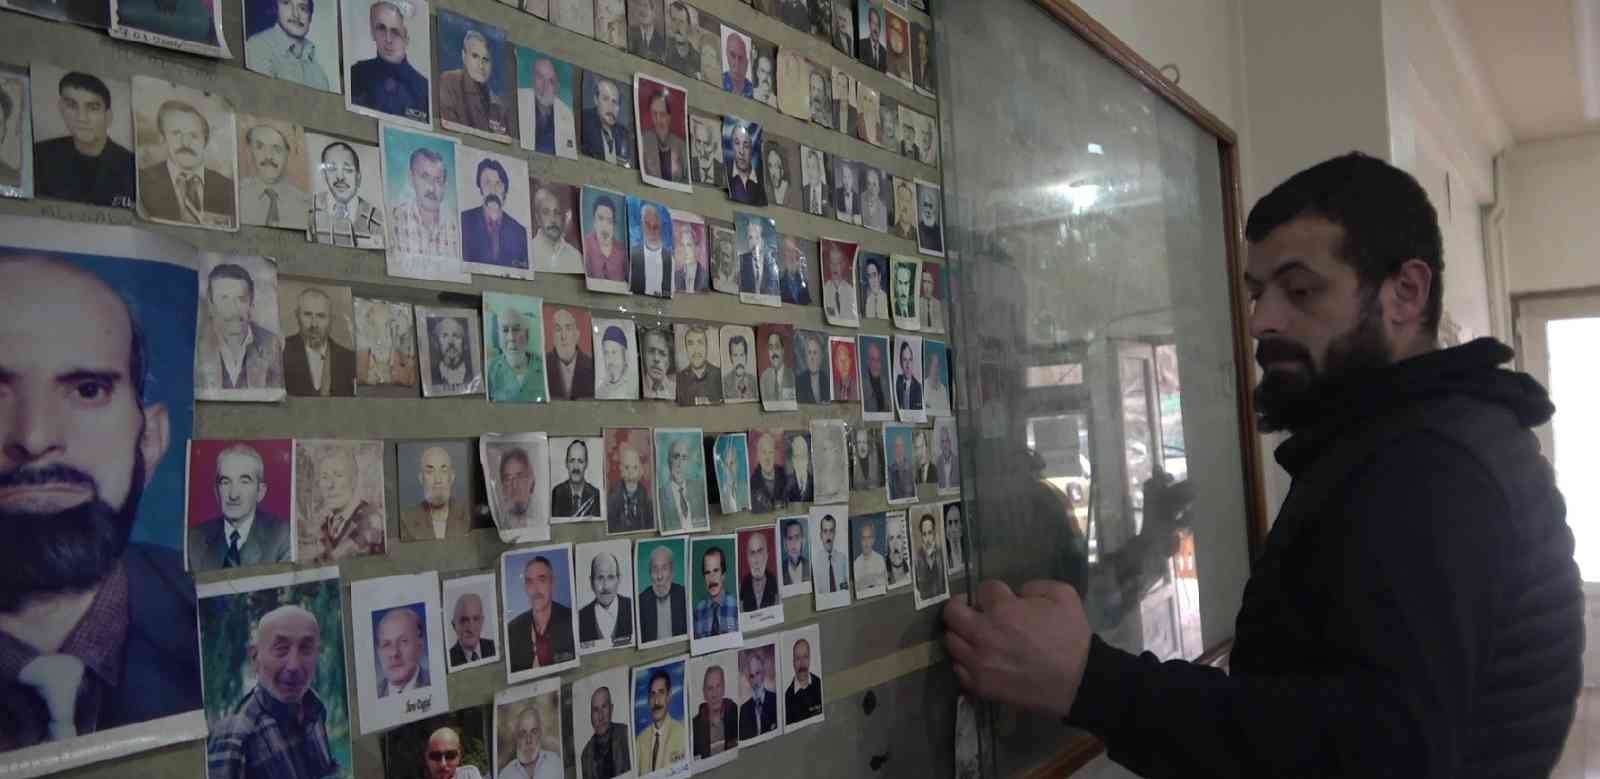 Ölenlerin fotoğrafı 40 yıldır bu çay ocağında toplanıyor #rize